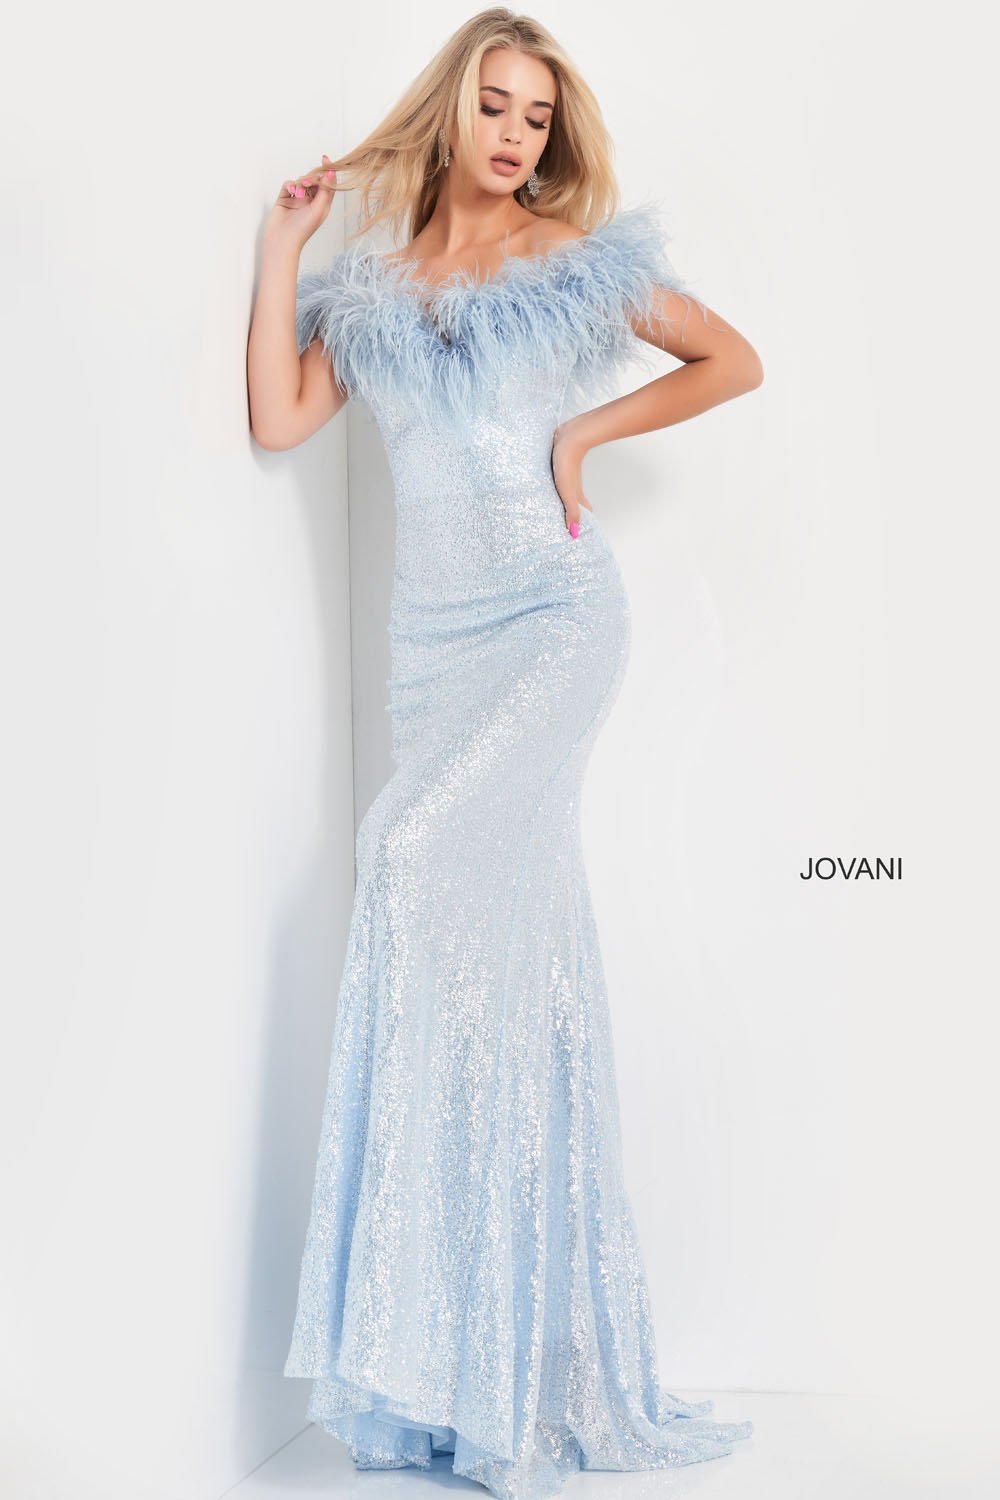 Jovani 06166 Dresses